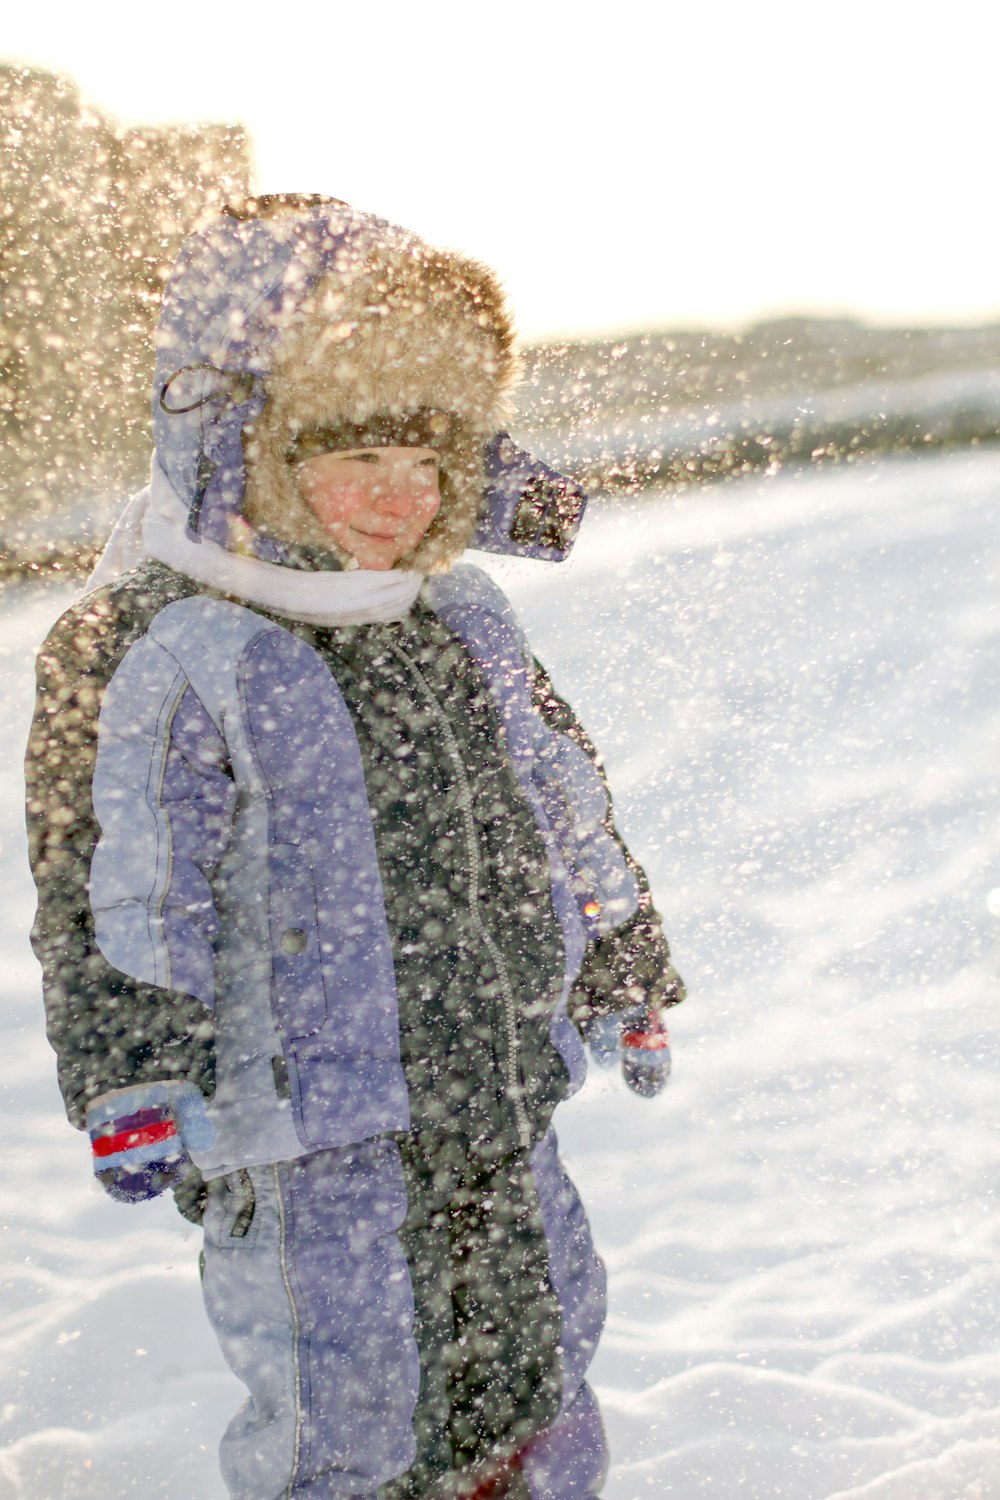 Un niño parado en la nieve con una tabla de snowboard